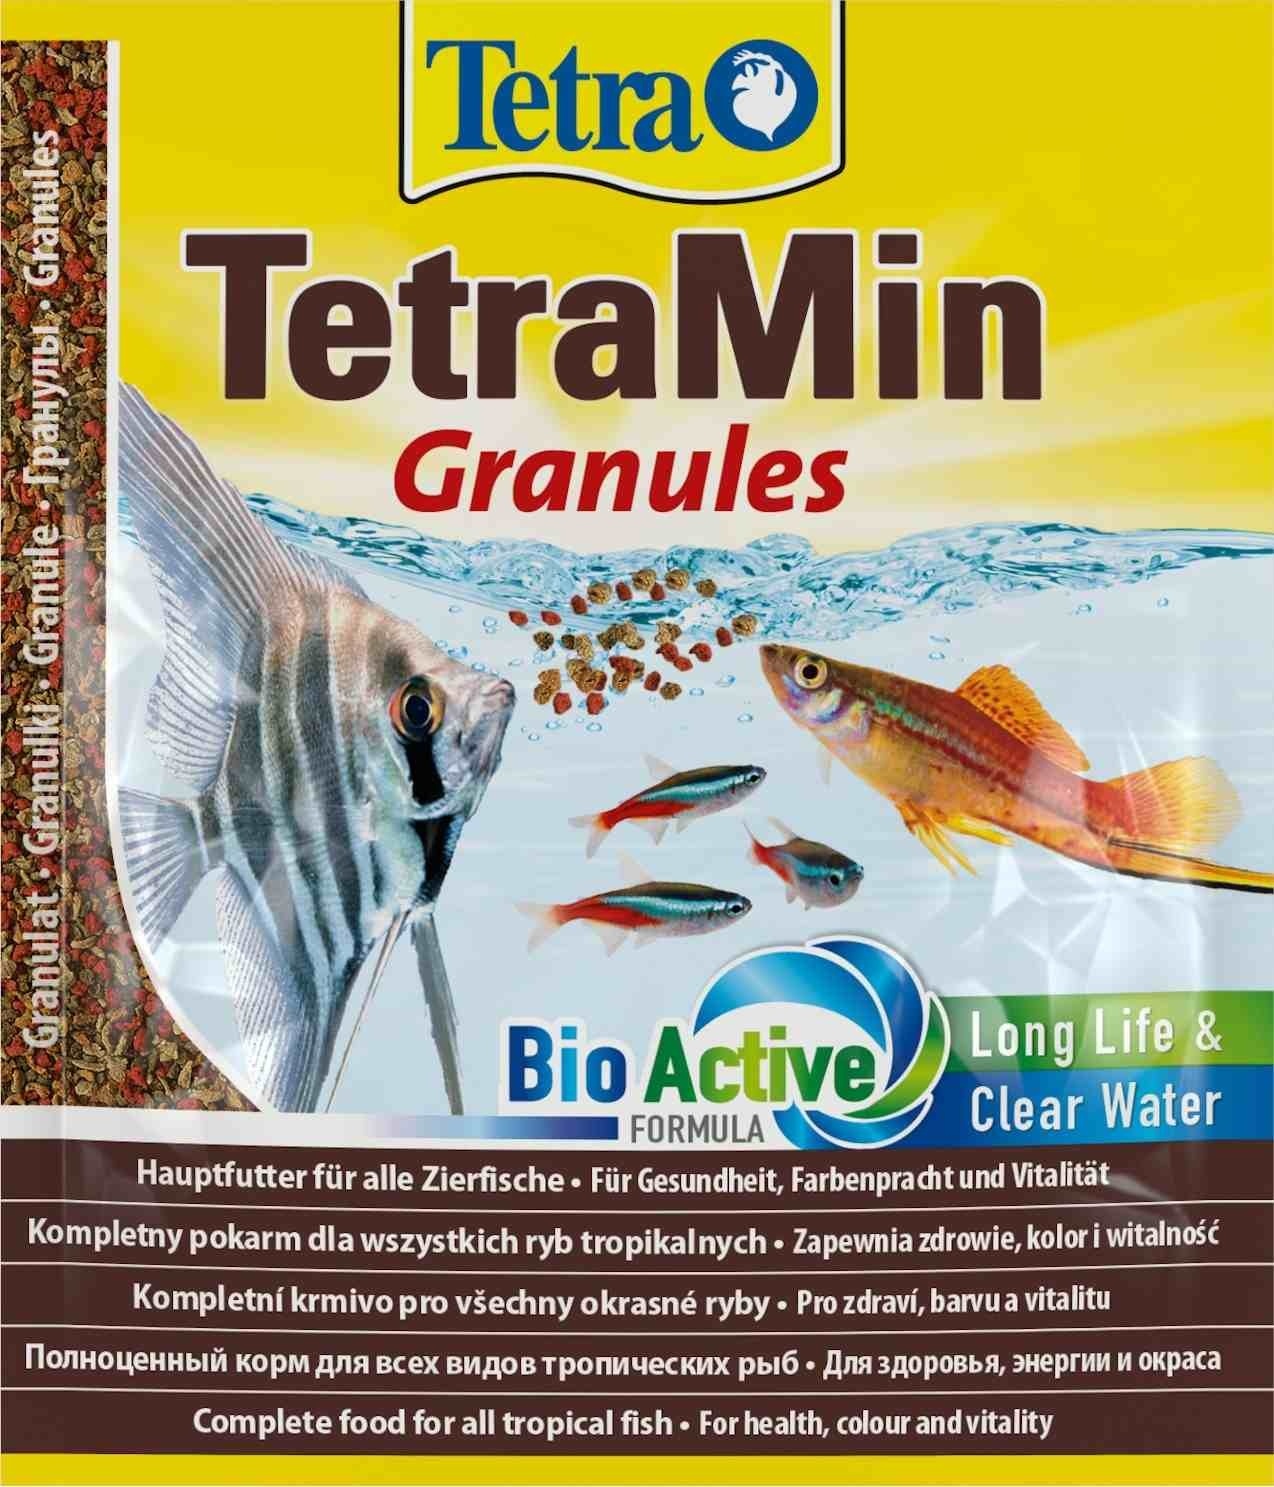 Tetra (корма) Tetra (корма) корм для всех видов тропических рыб. гранулы TetraMin Granules (15 г) tetra корма tetra корма корм для усиления окраса рыб гранулы 15 г